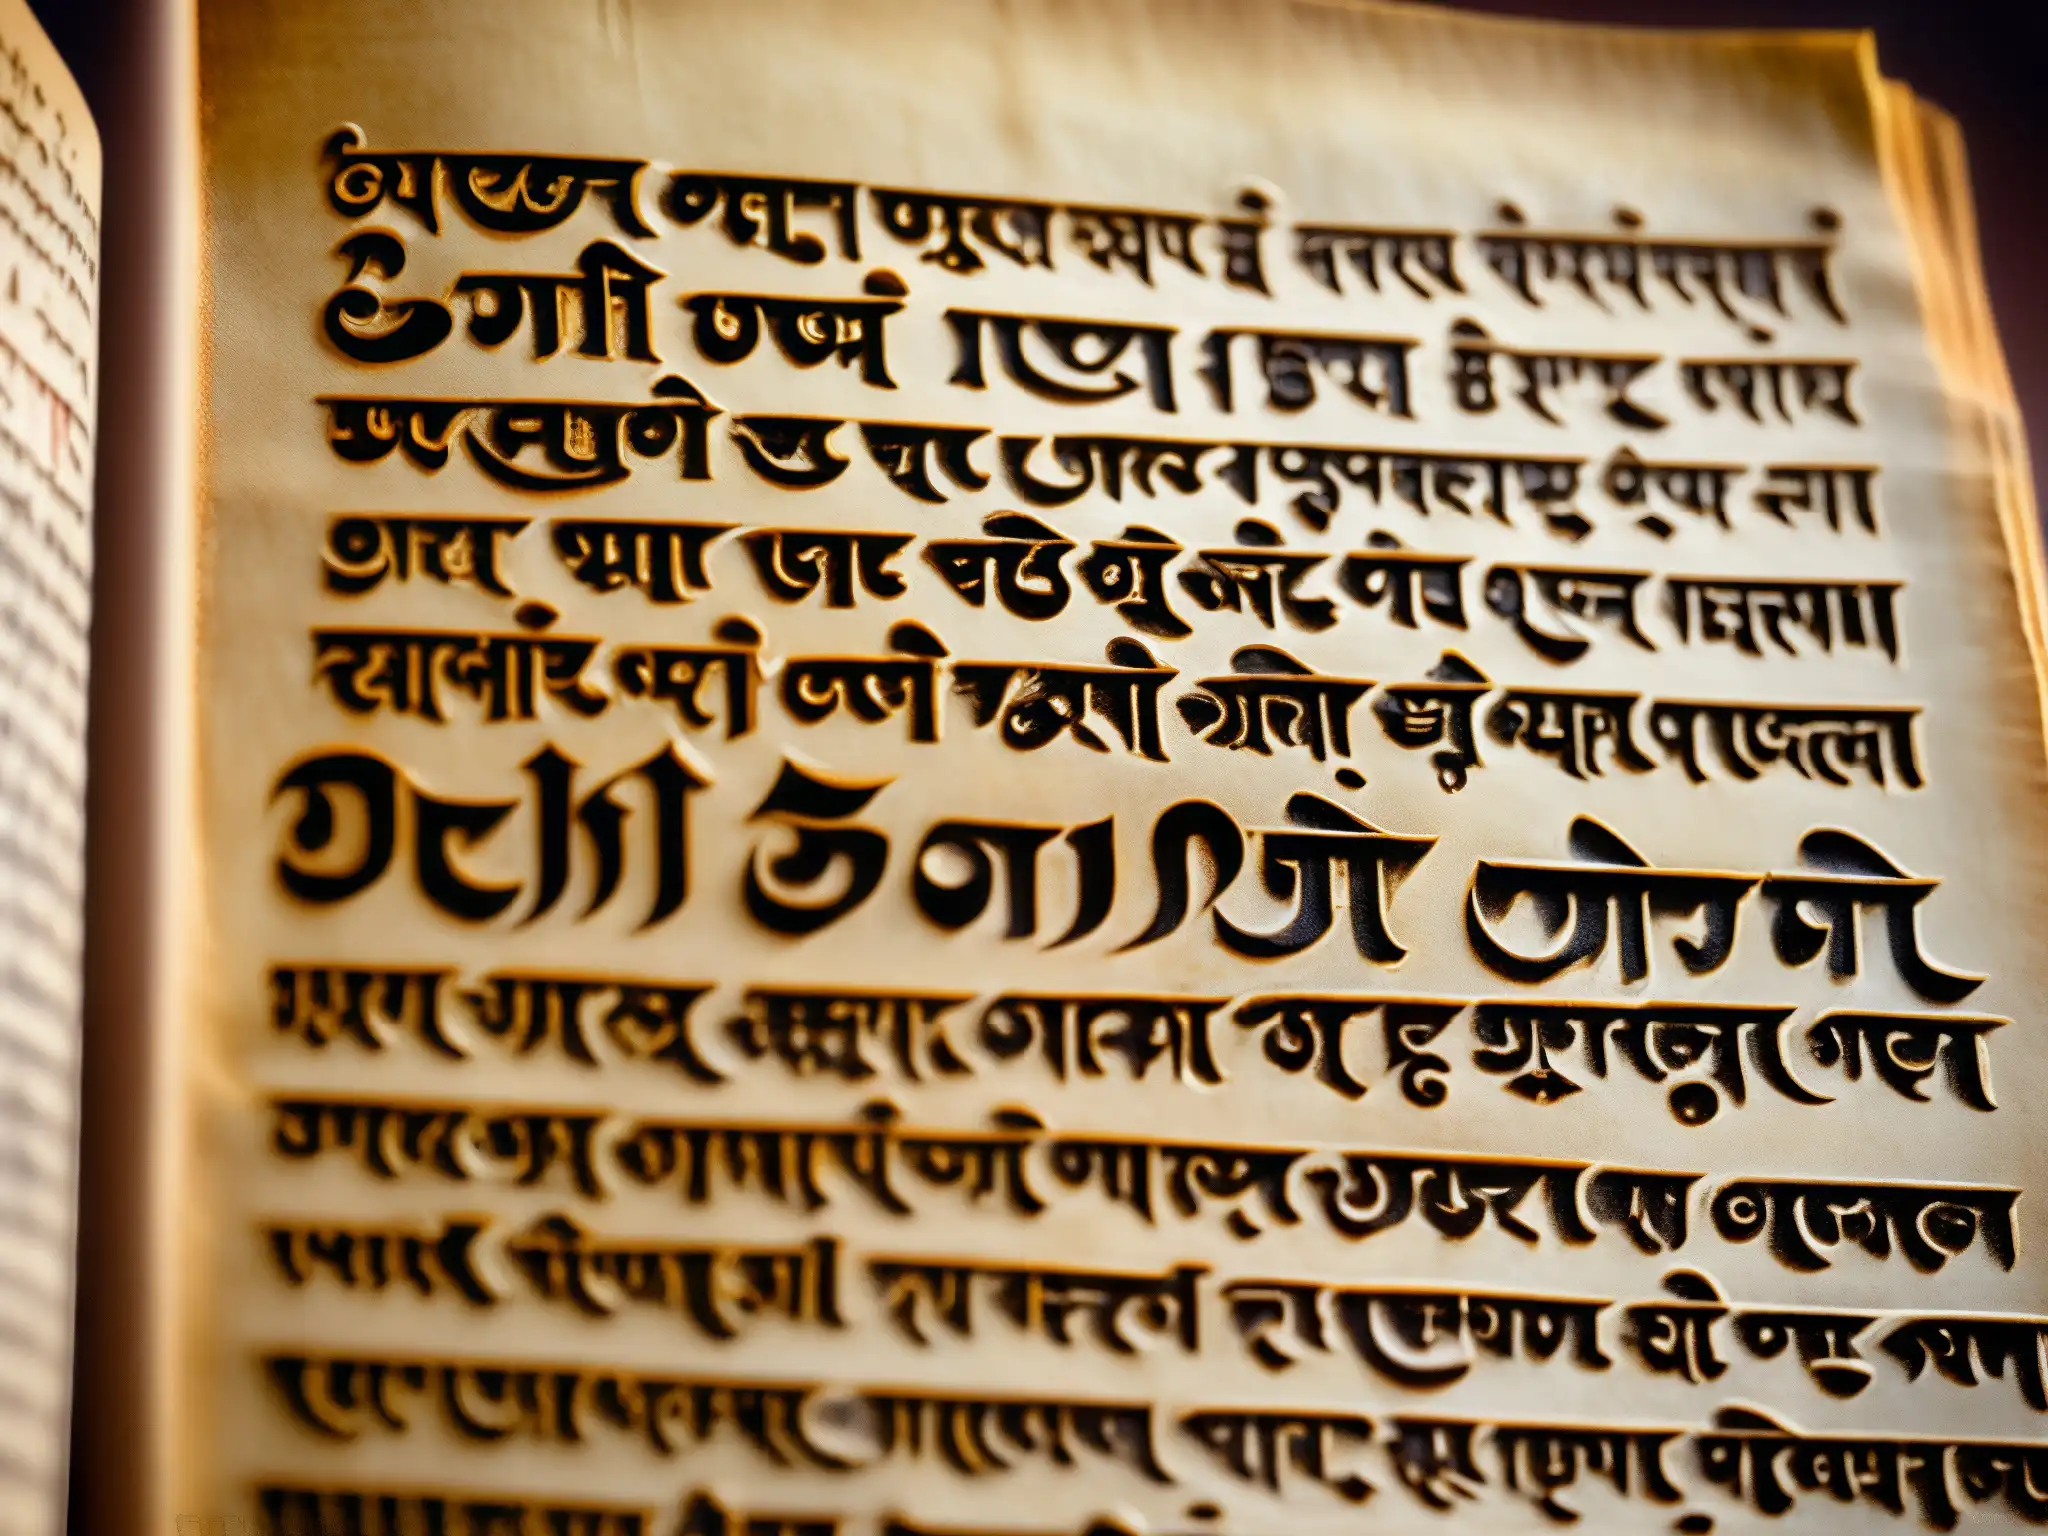 Antiguo manuscrito en sánscrito iluminado por cálida luz, revelando el legado misterioso de los Reyes de Delhi